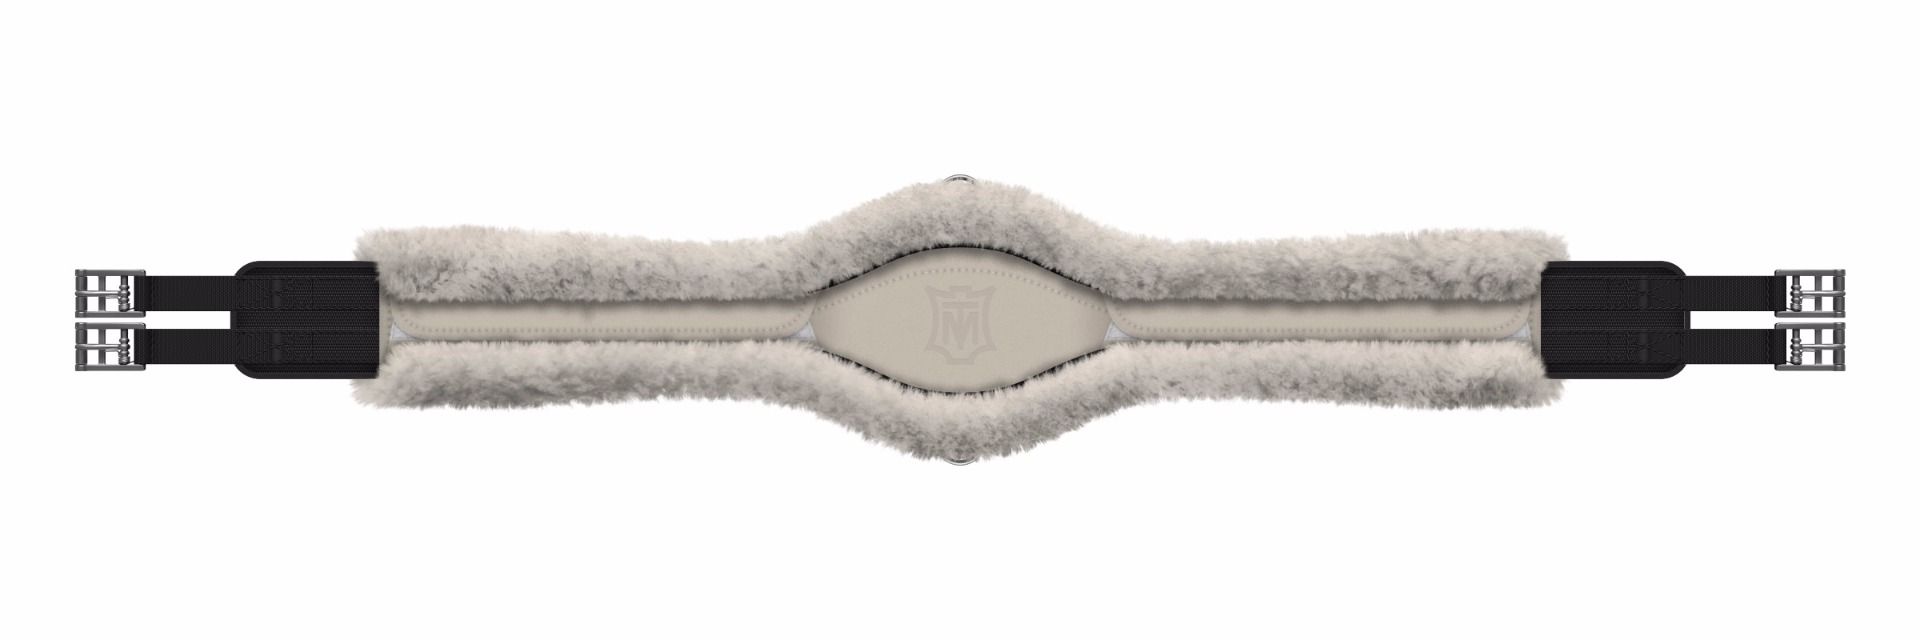 Mattès – Sangle longue Slim-Line anatomique avec housse amovible Mattès 105cm Marron  | Sellerie Bucéphale